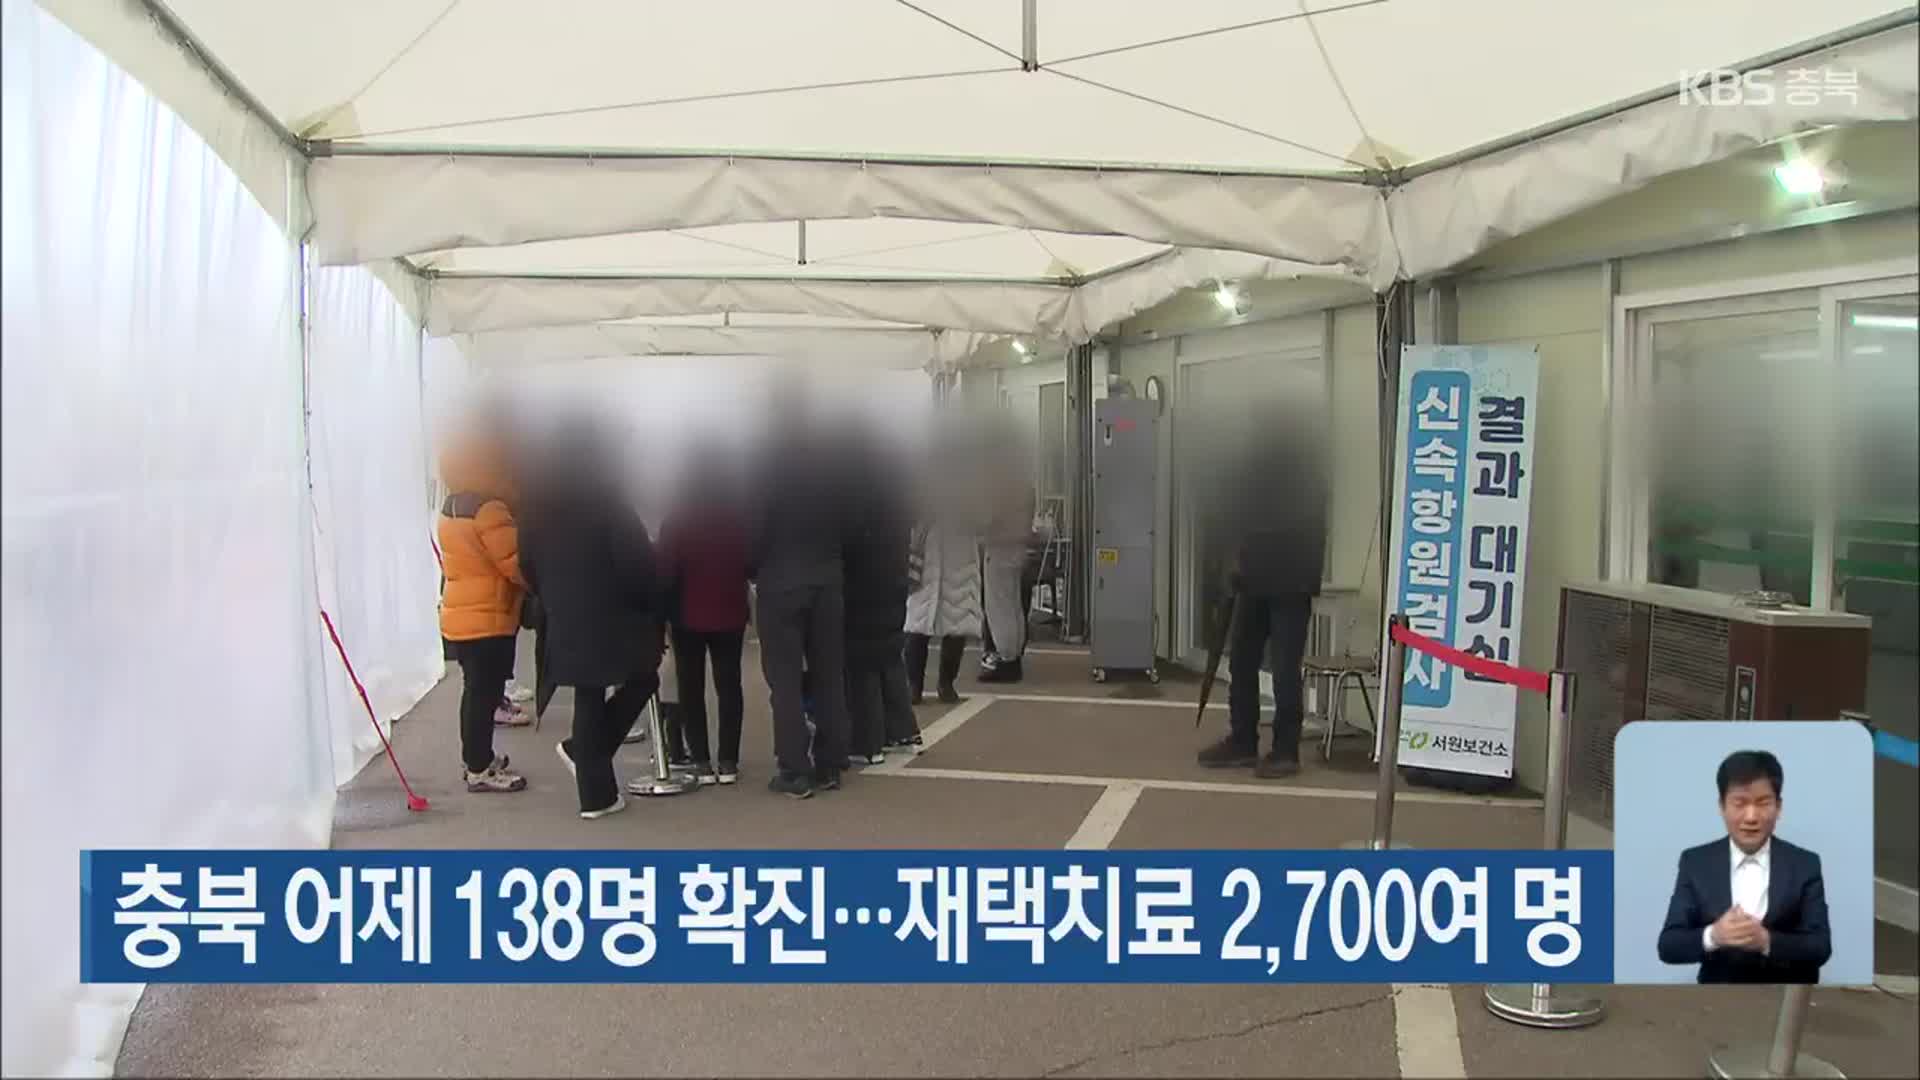 충북 어제 138명 확진…재택치료 2,700여 명